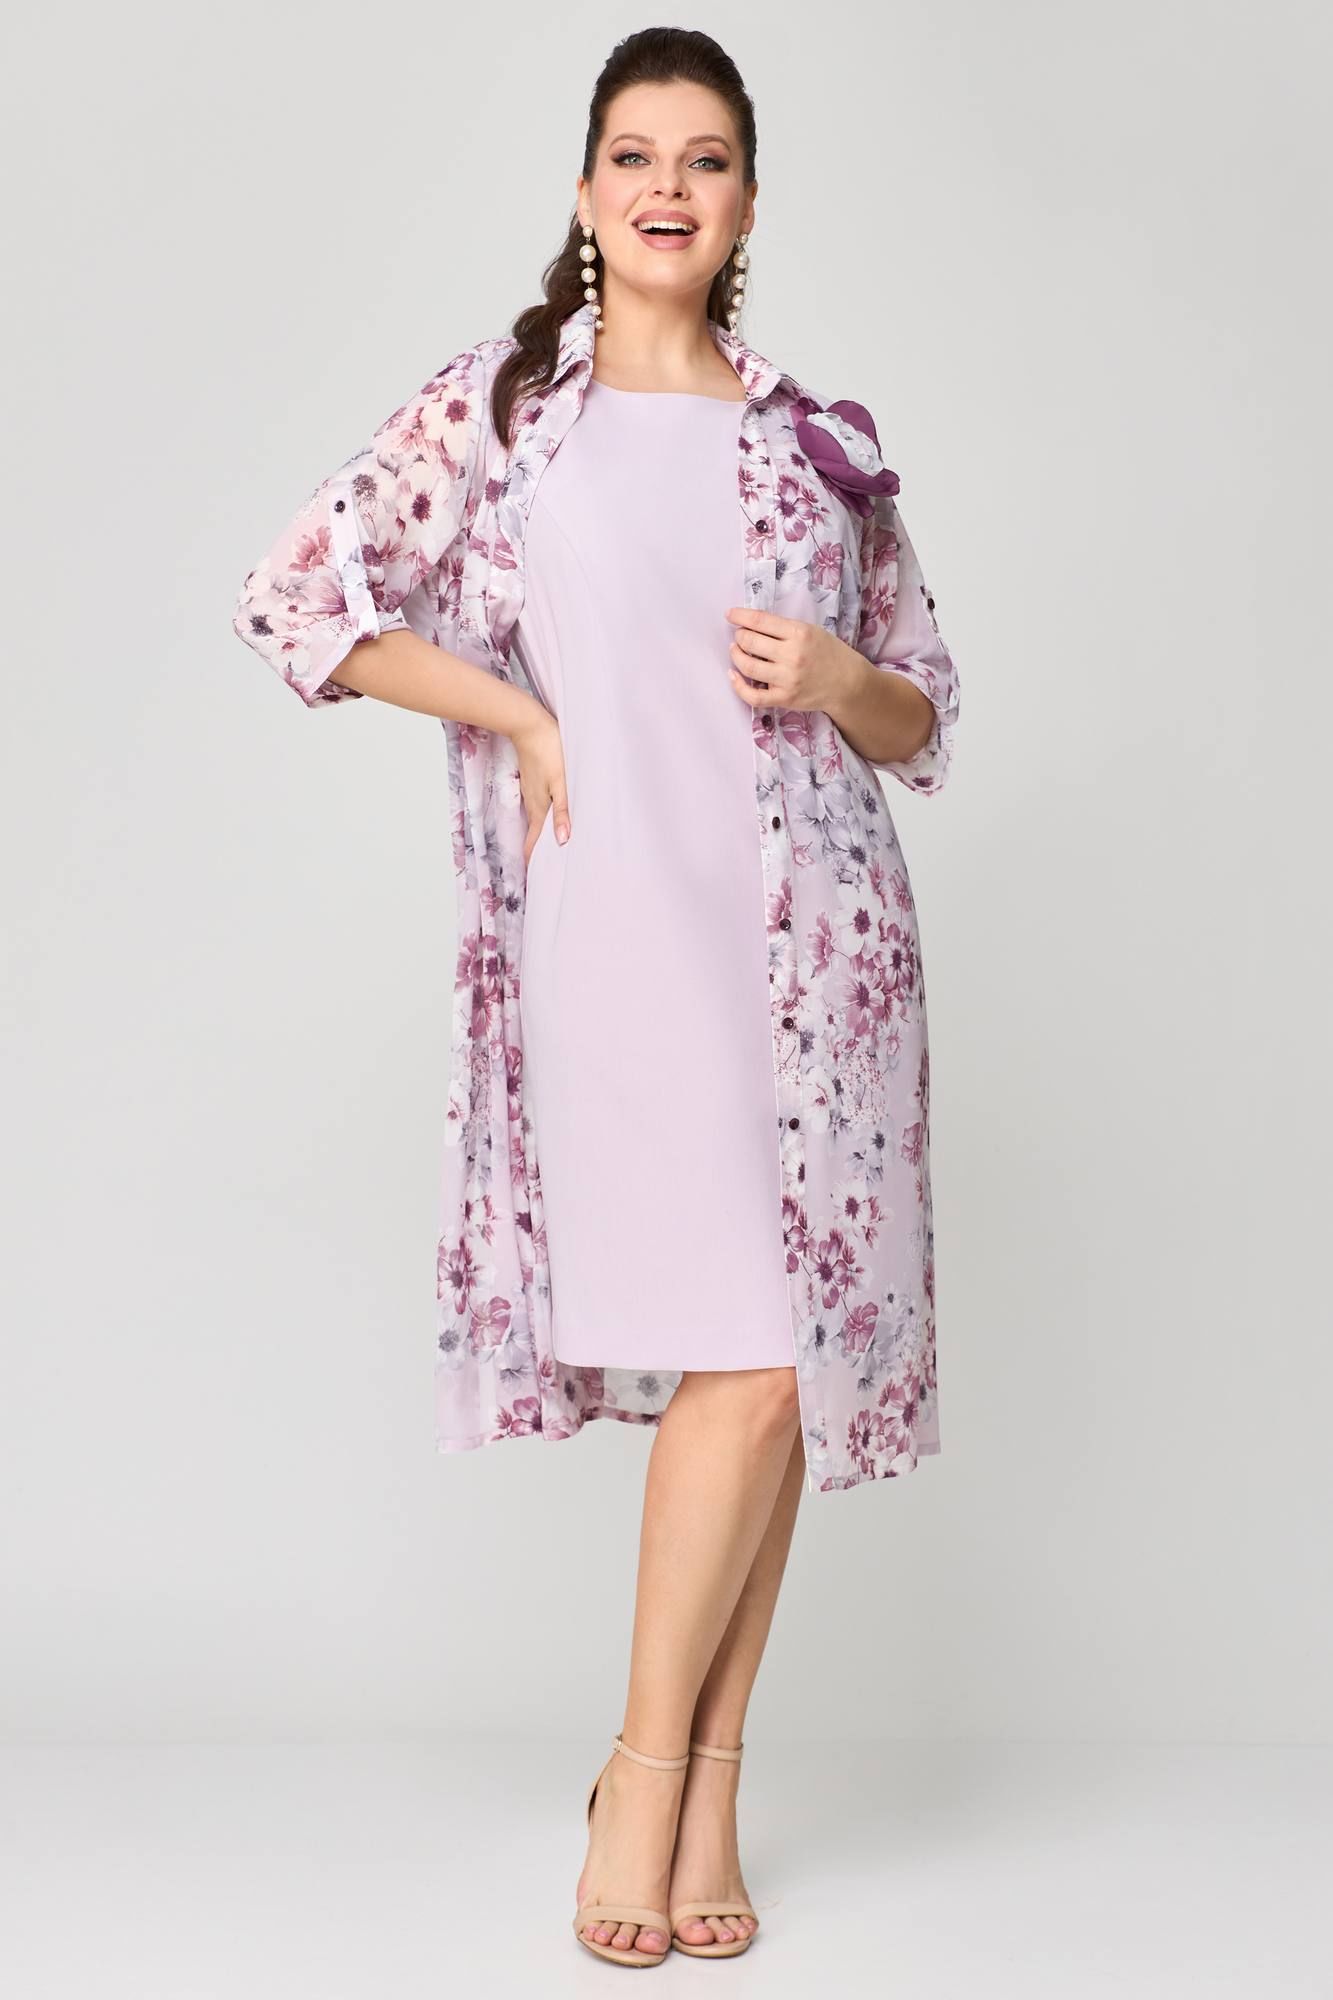 Комплекты с платьем Мишель стиль 1188 розово-сиреневый